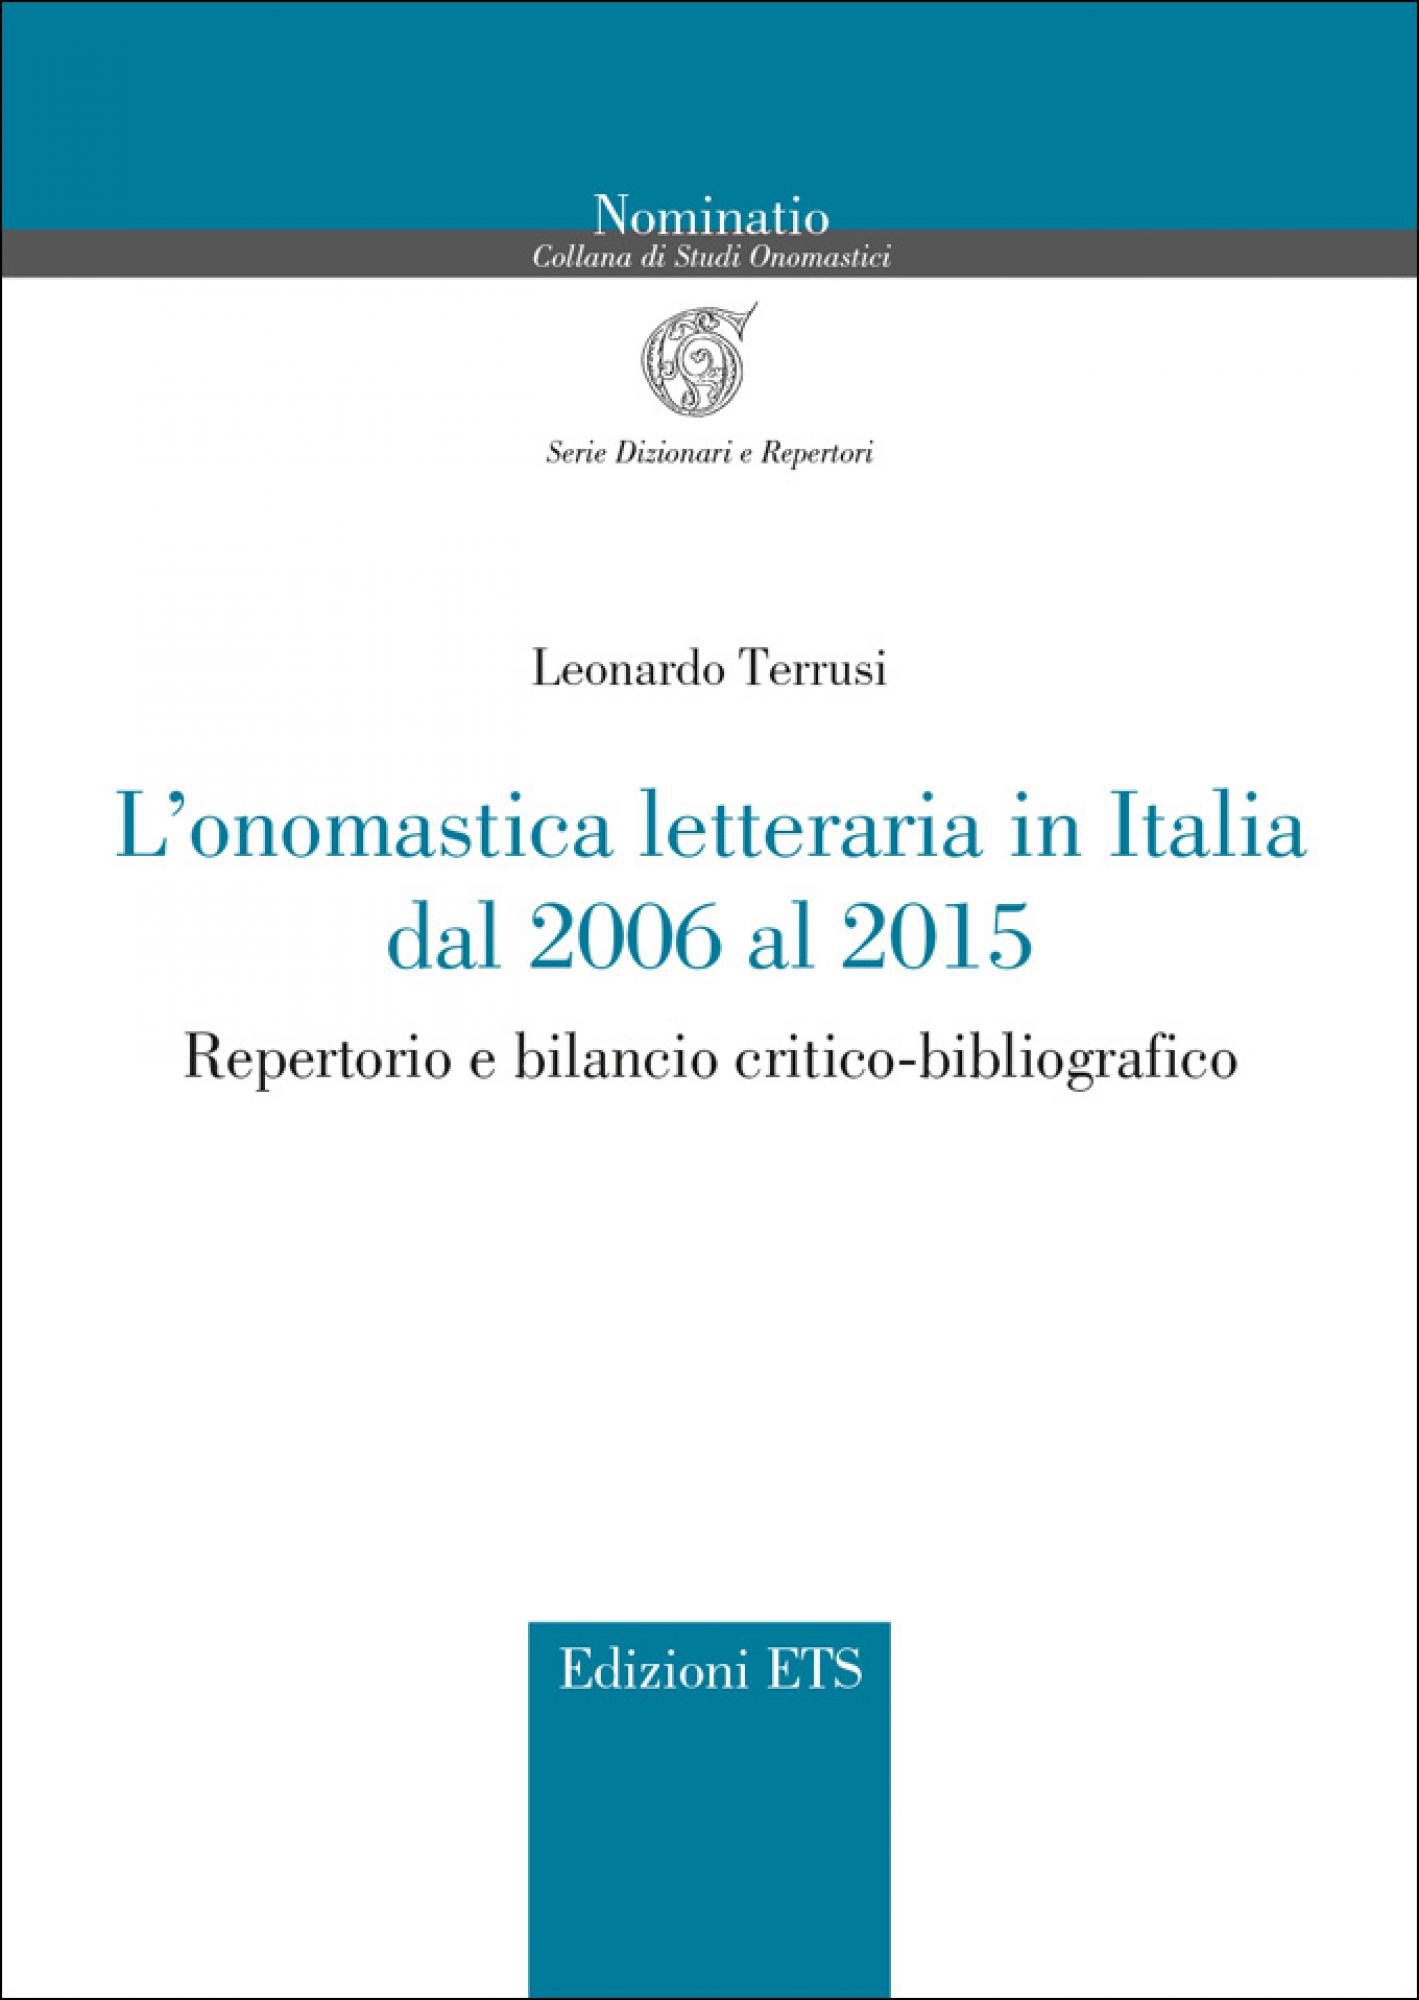 L’onomastica letteraria in Italia dal 2006 al 2015.Repertorio e bilancio critico-bibliografico